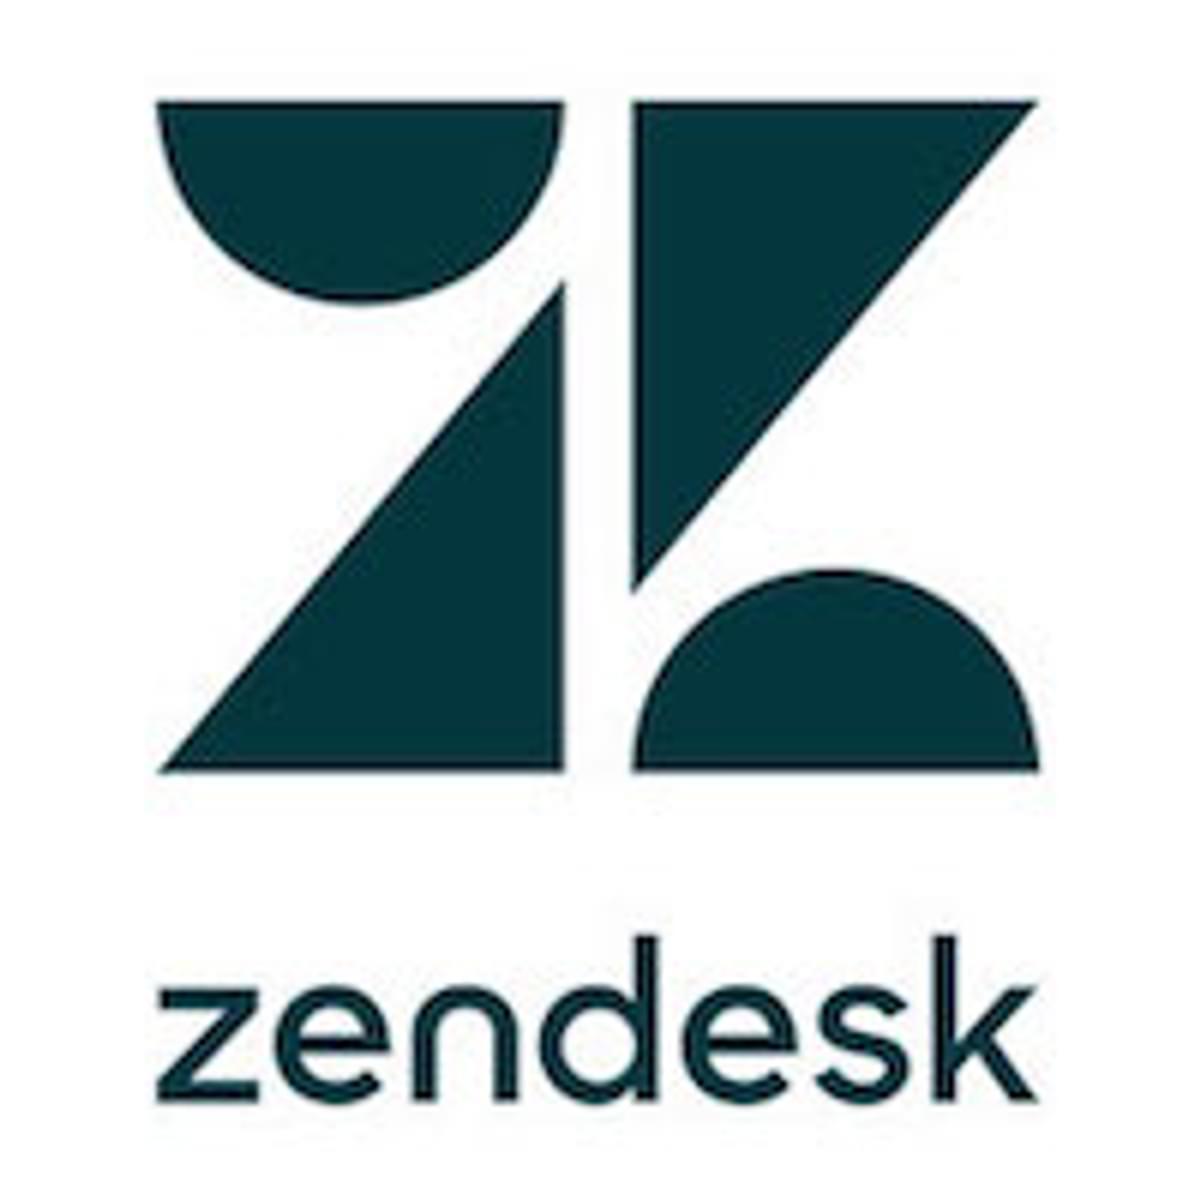 Aandeelhouder verzet zich tegen overname van Zendesk image